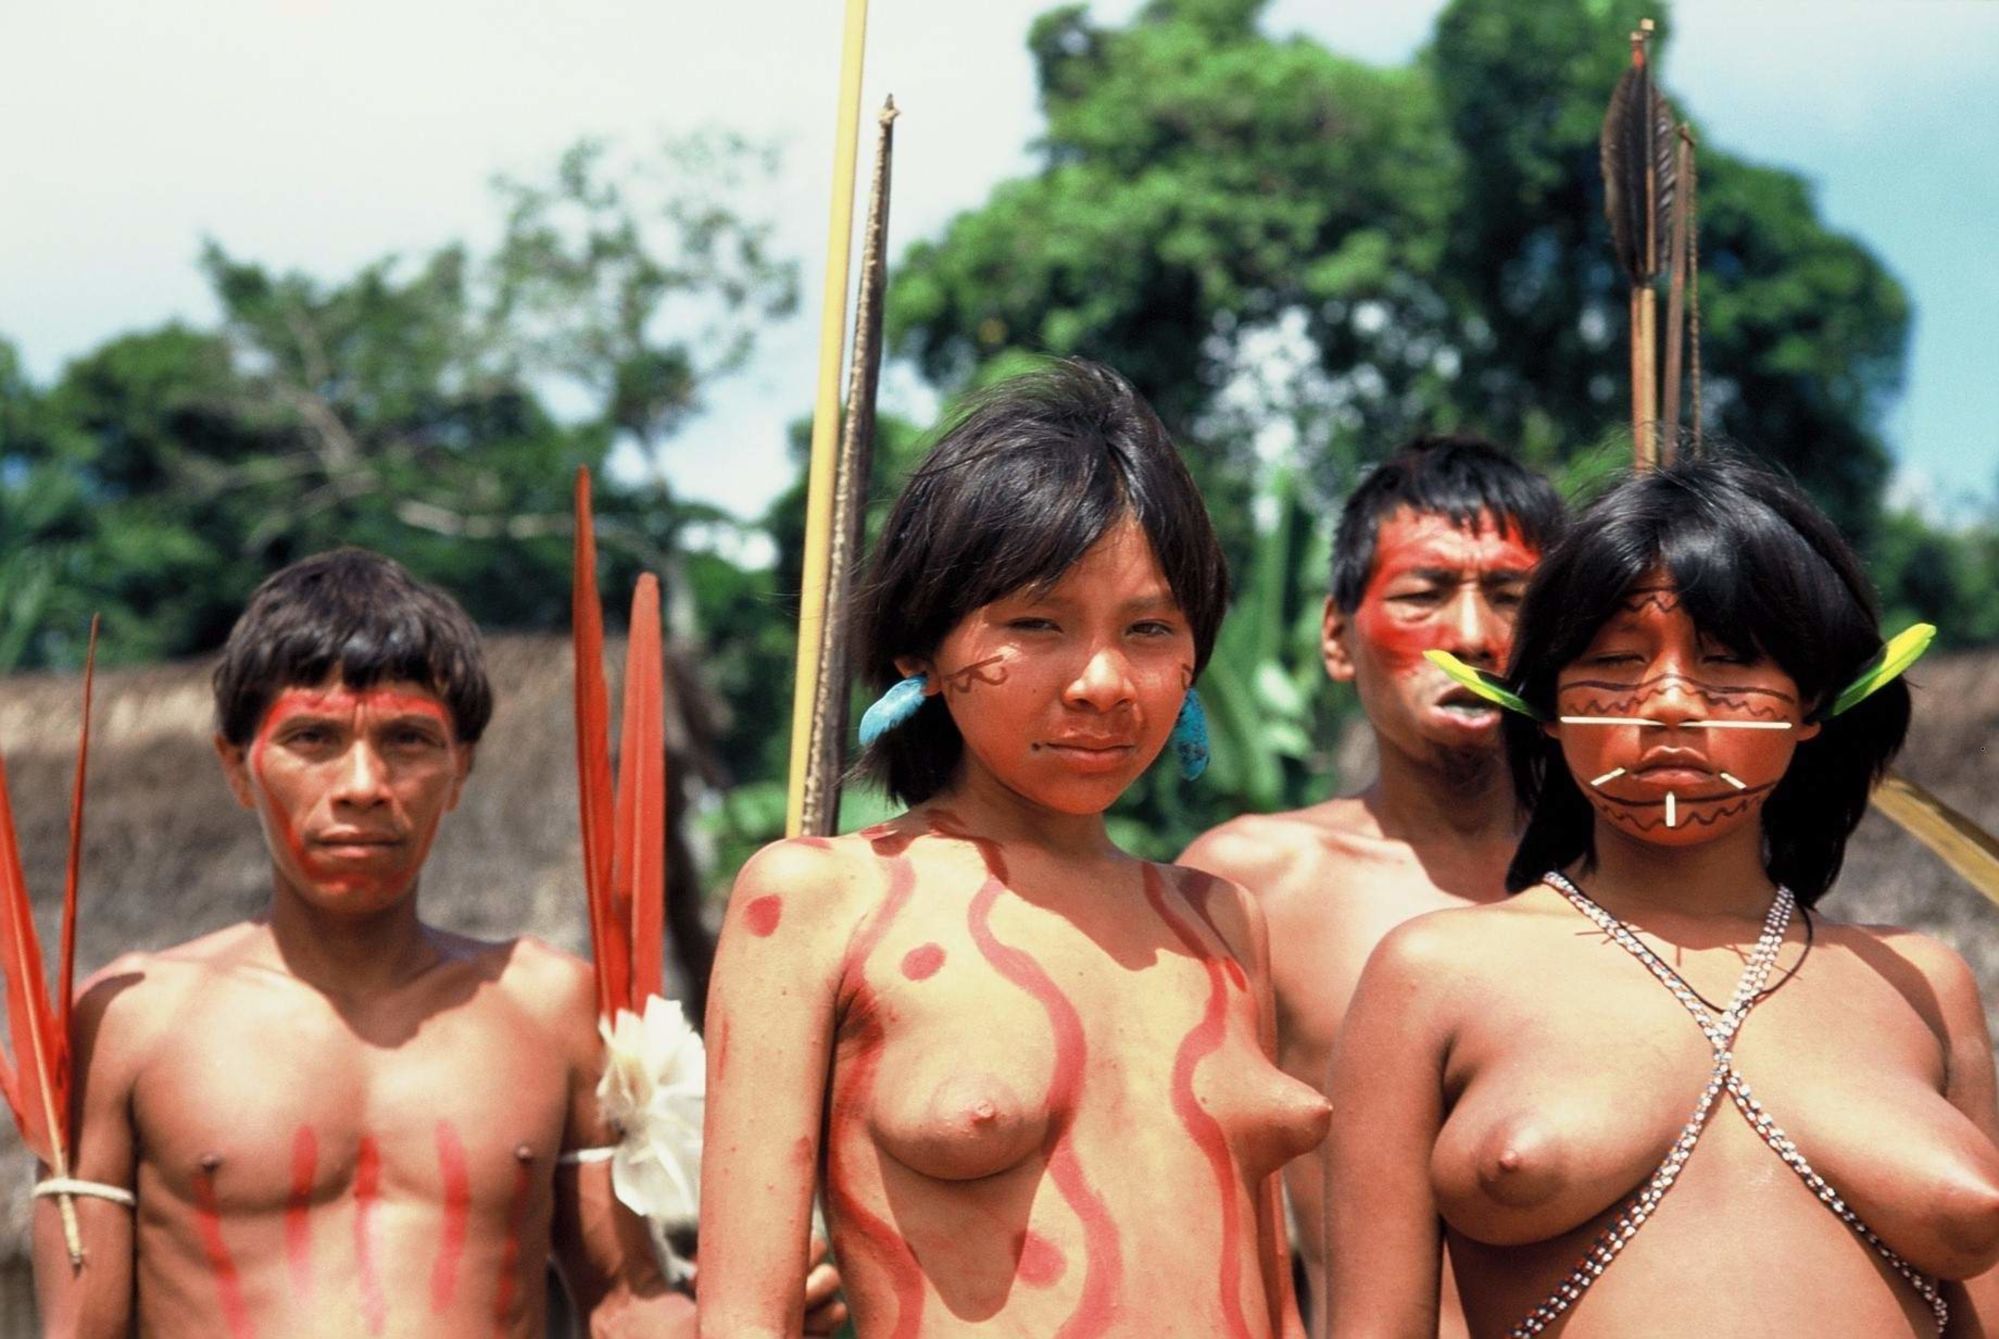 дикие племена с голыми женщинами фото 63